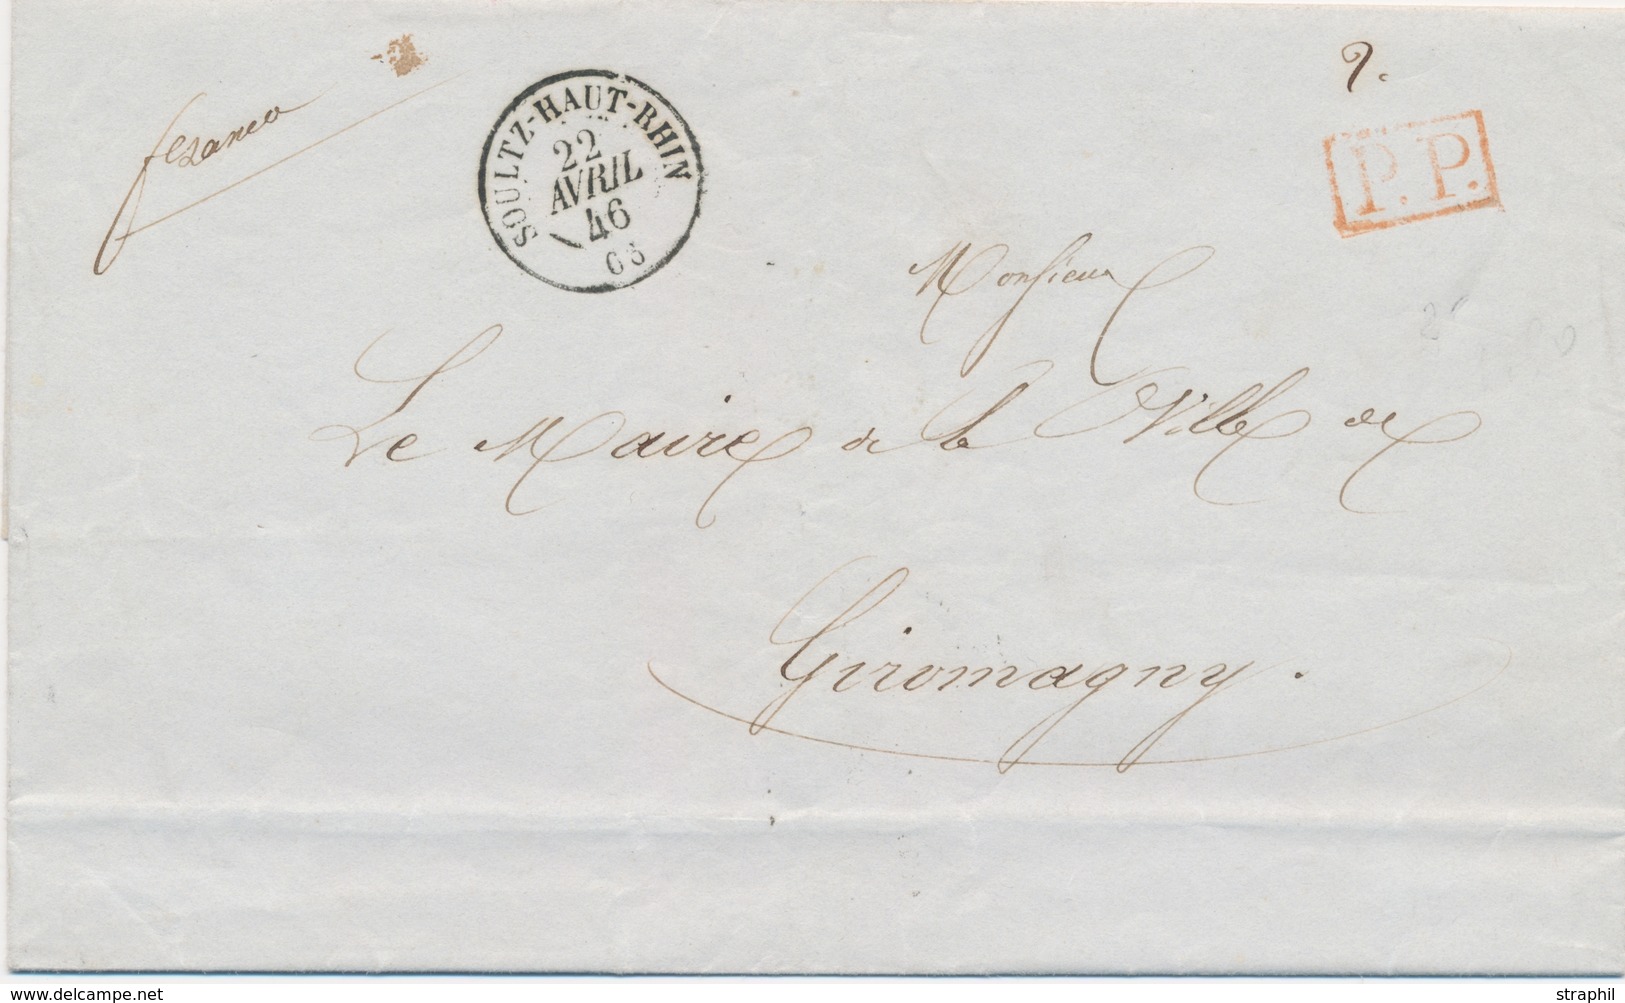 LAC M. POSTALES 19ème Siècle - HAUT-RHIN (Dépt 66) - LAC - Pli En PP -obl. #Soultz Haut-Rhin# - 22/4/1846 - Pour Giromag - Covers & Documents